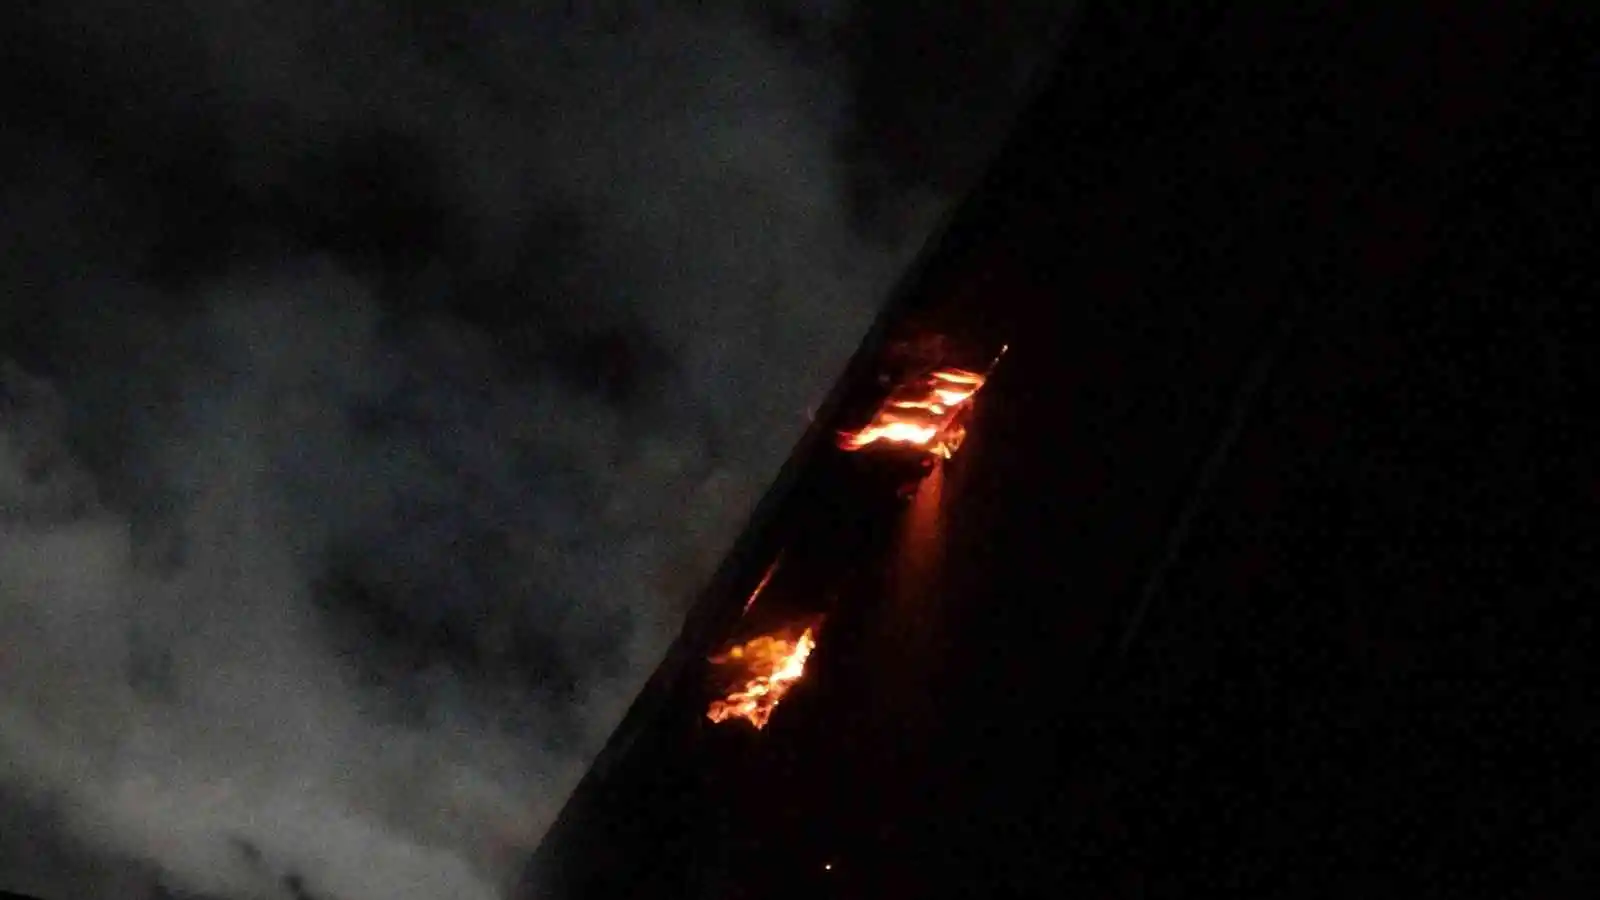 Ordu’da 5 katlı binanın çatı katında yangın: 2 binanın çatısı hasar gördü
